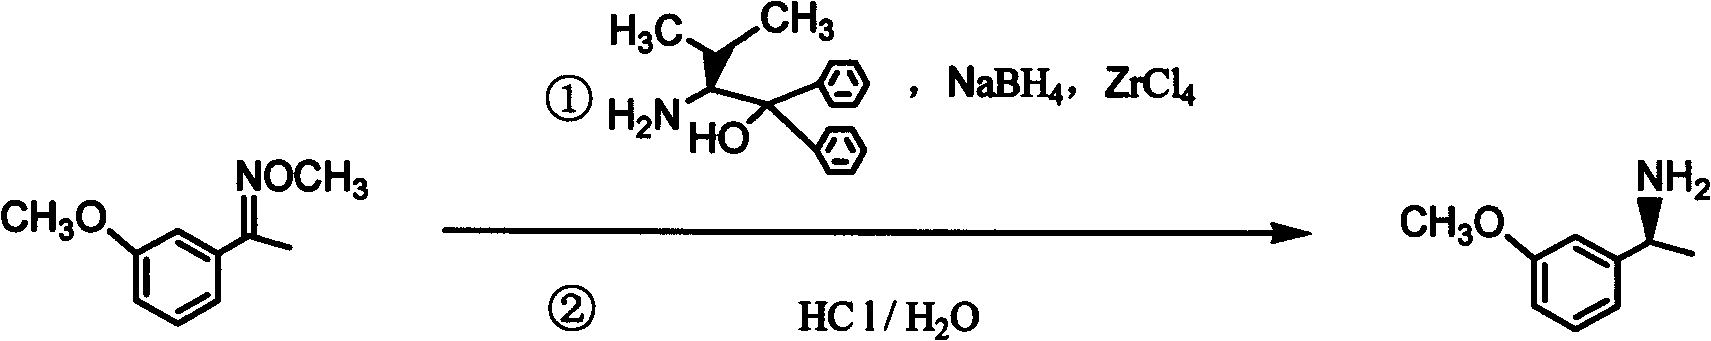 (S)-3-(1-dimethylaminoethyl)phenol preparation method